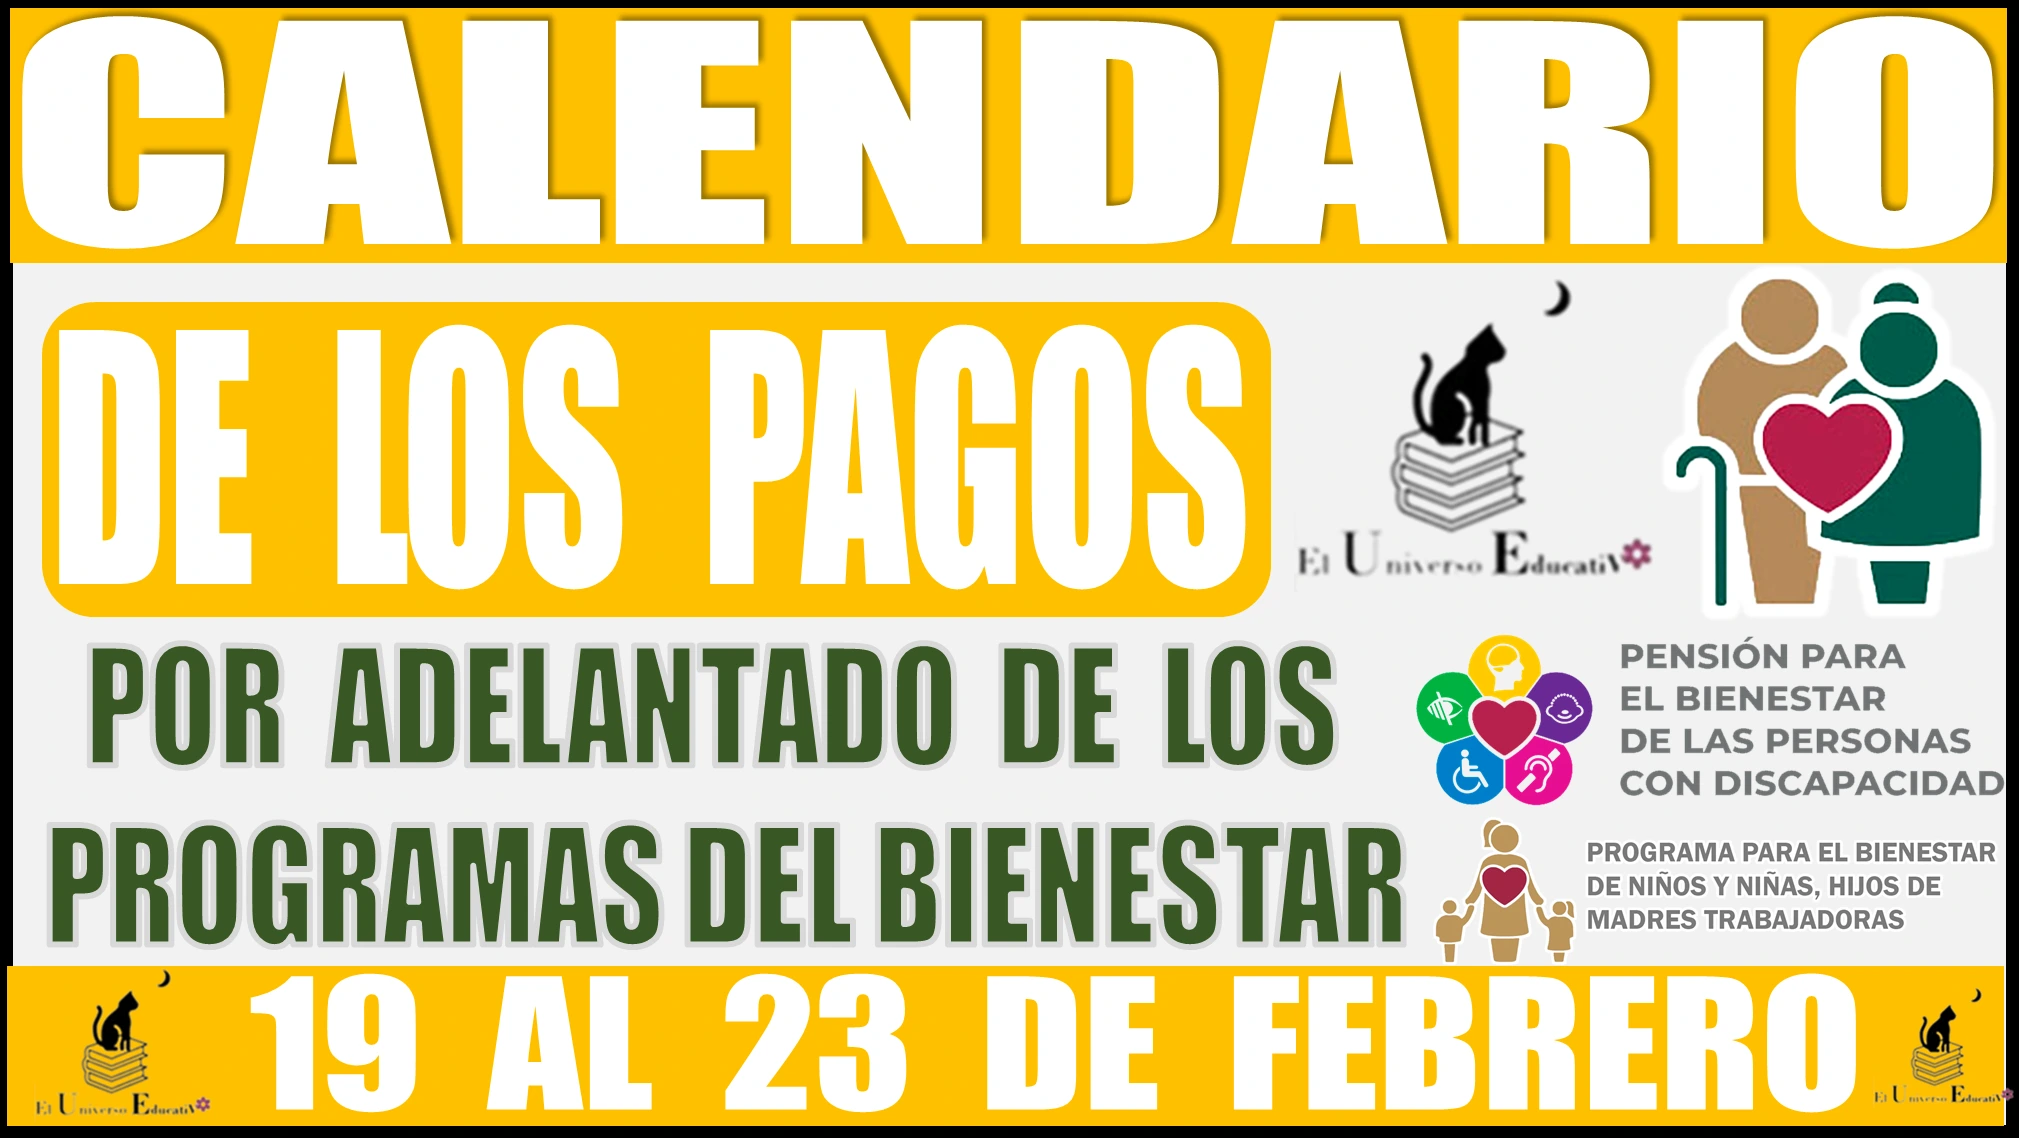  CALENDARIO DE LOS PAGOS POR ADELANTADO DE LOS PROGRAMAS DEL BIENESTAR | 19 AL 23 DE FEBRERO